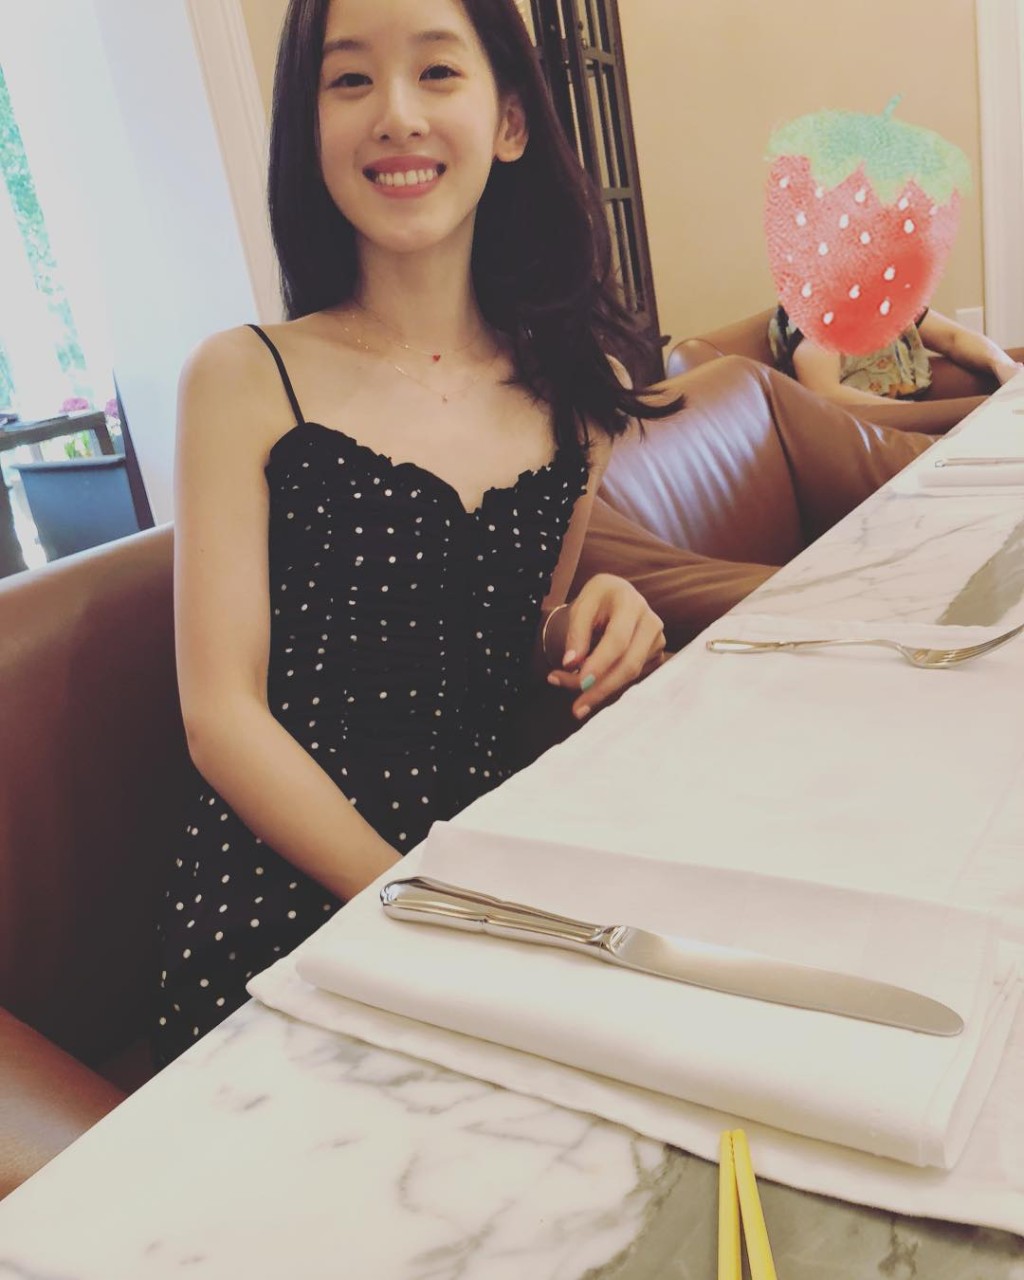 「奶茶妹」章澤天是清華校花。Instagram